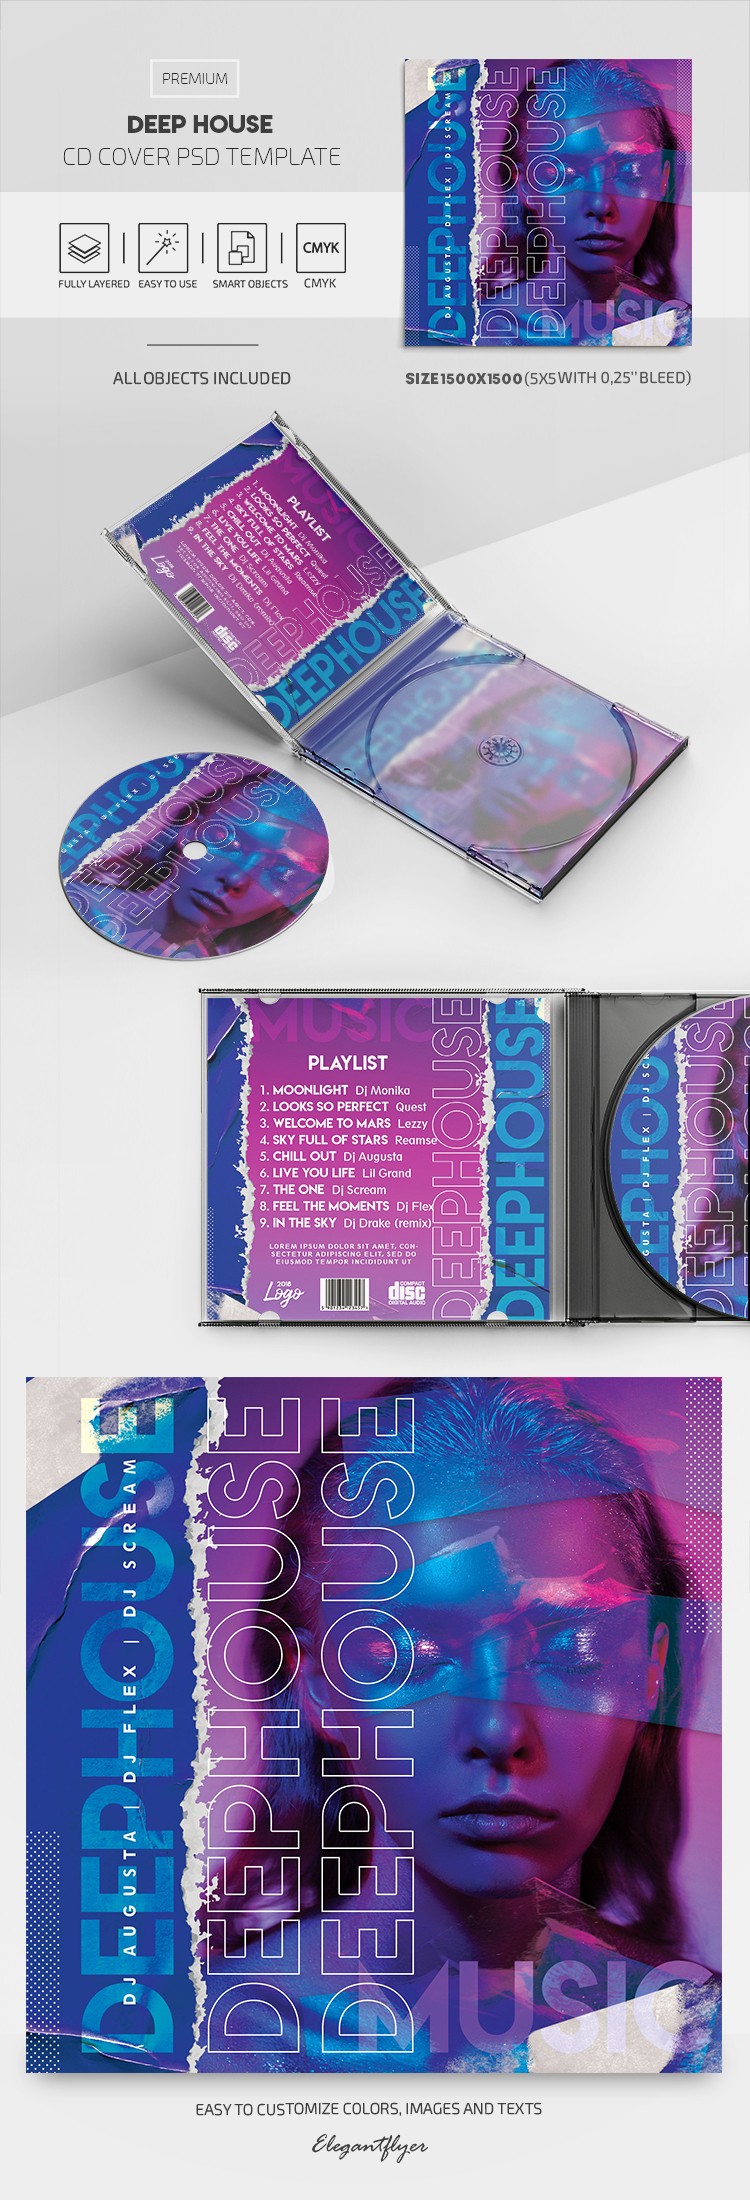 Deep House CD Cover by ElegantFlyer